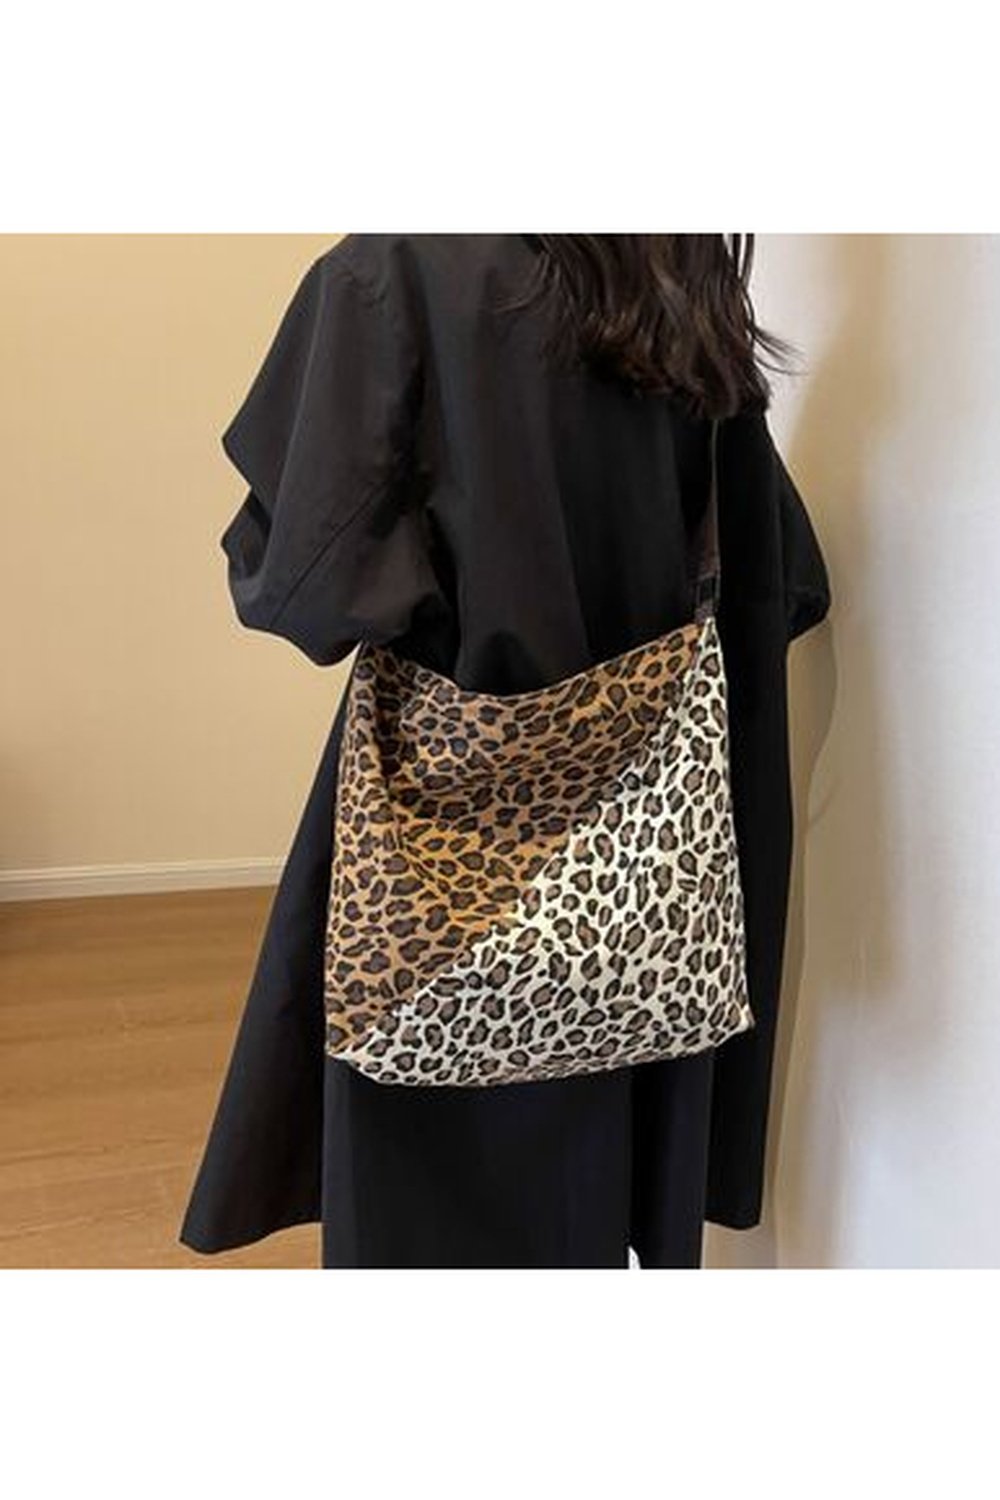 Leopard Contrast Adjustable Strap Shoulder Bag - Handbag - FITGGINS